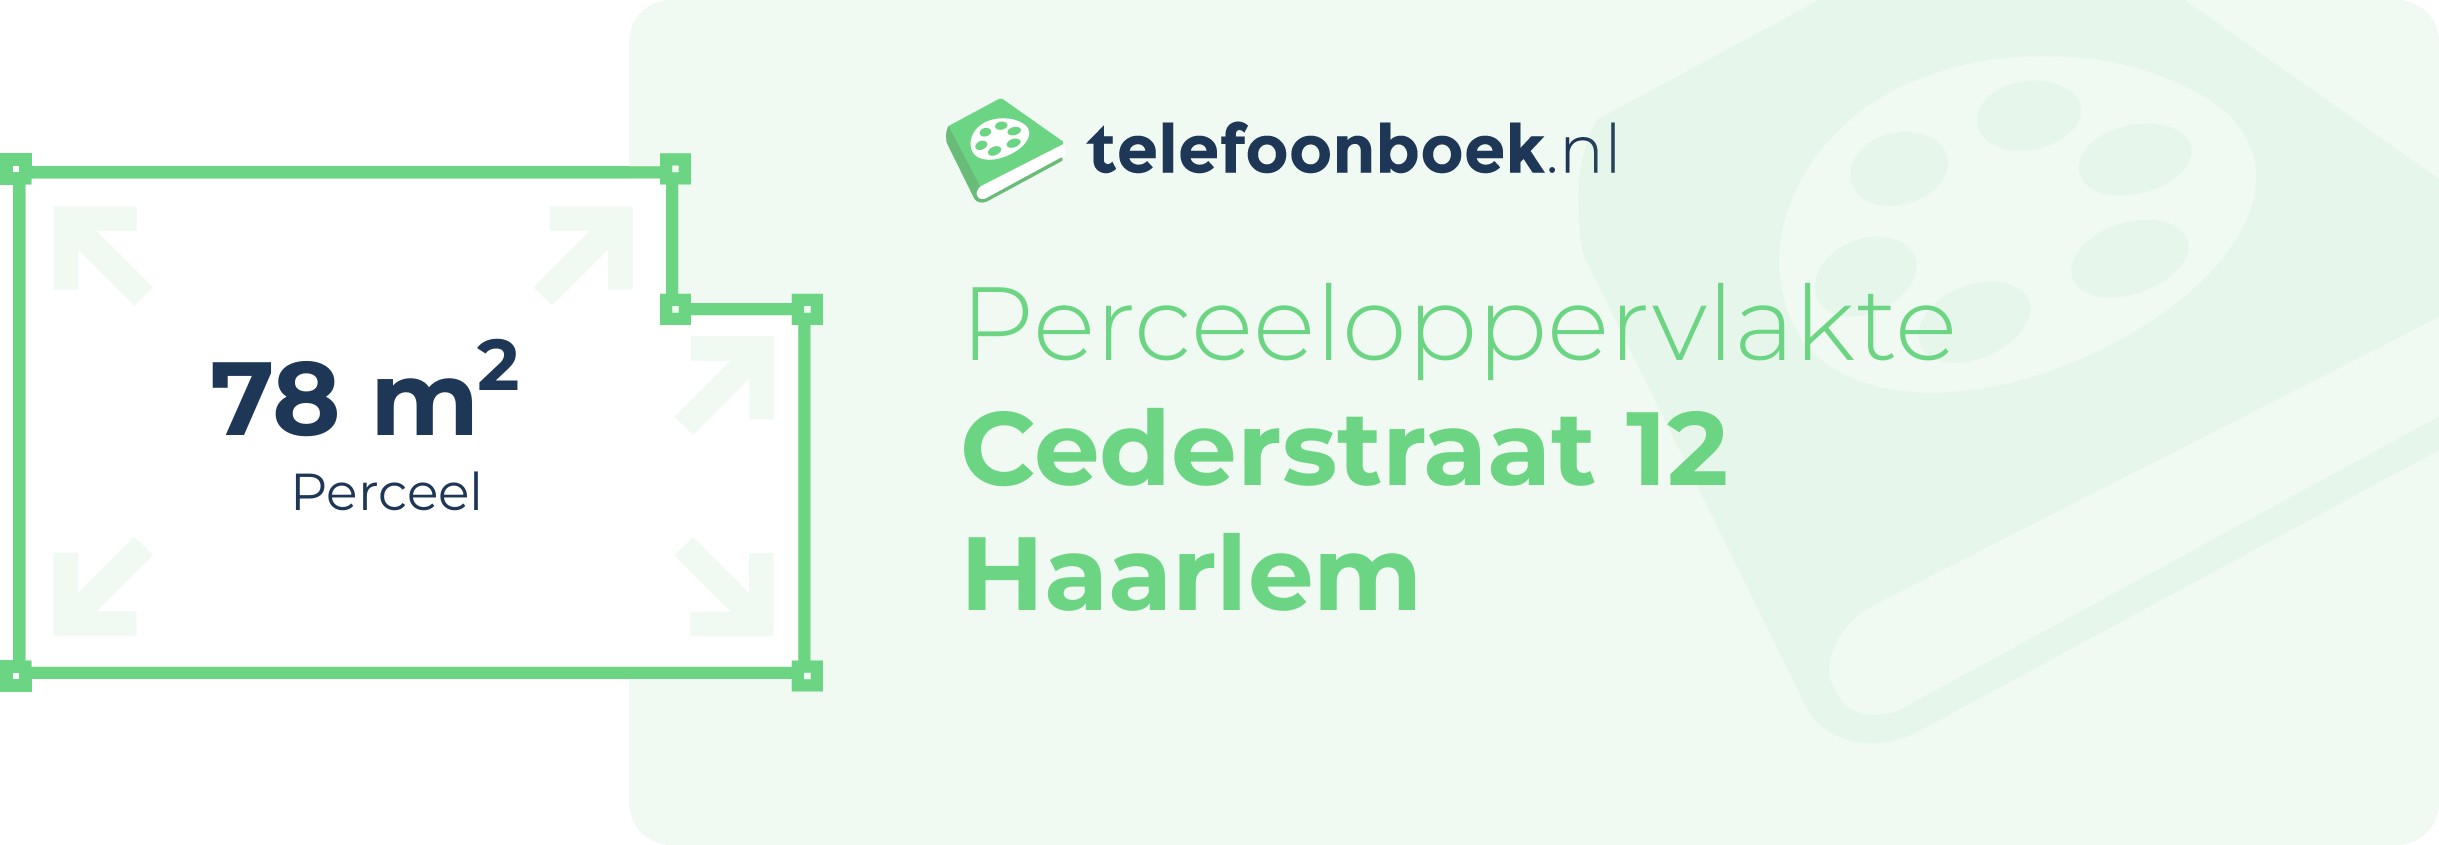 Perceeloppervlakte Cederstraat 12 Haarlem